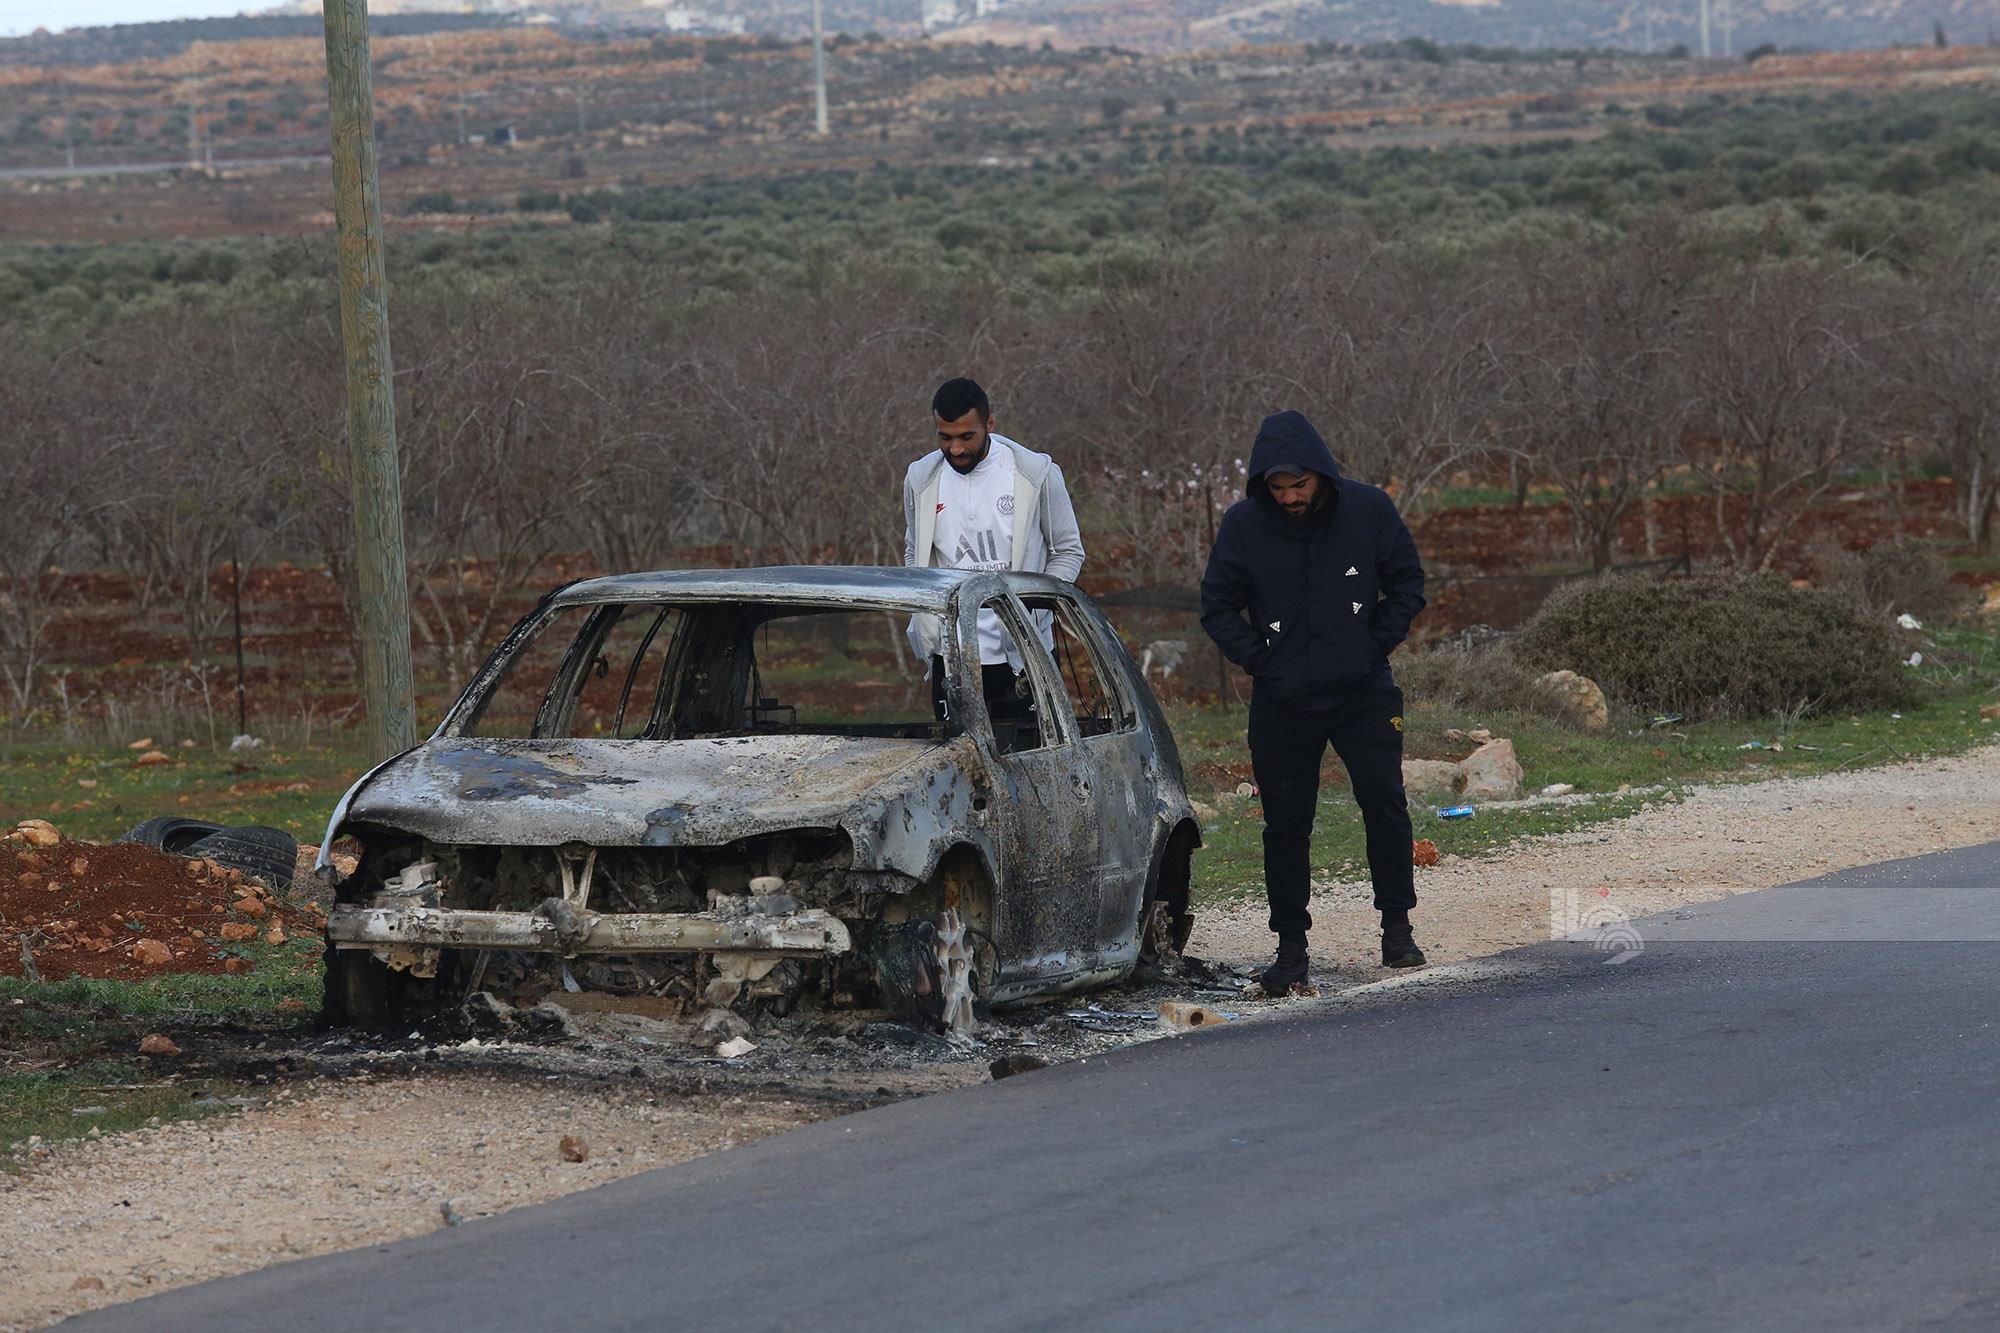 مستوطنون يحرقون ست مركبات فلسطينية بشكل كامل بين بلدتي عقربا ومجدل بني فاضل قرب نابلس 4.jpg